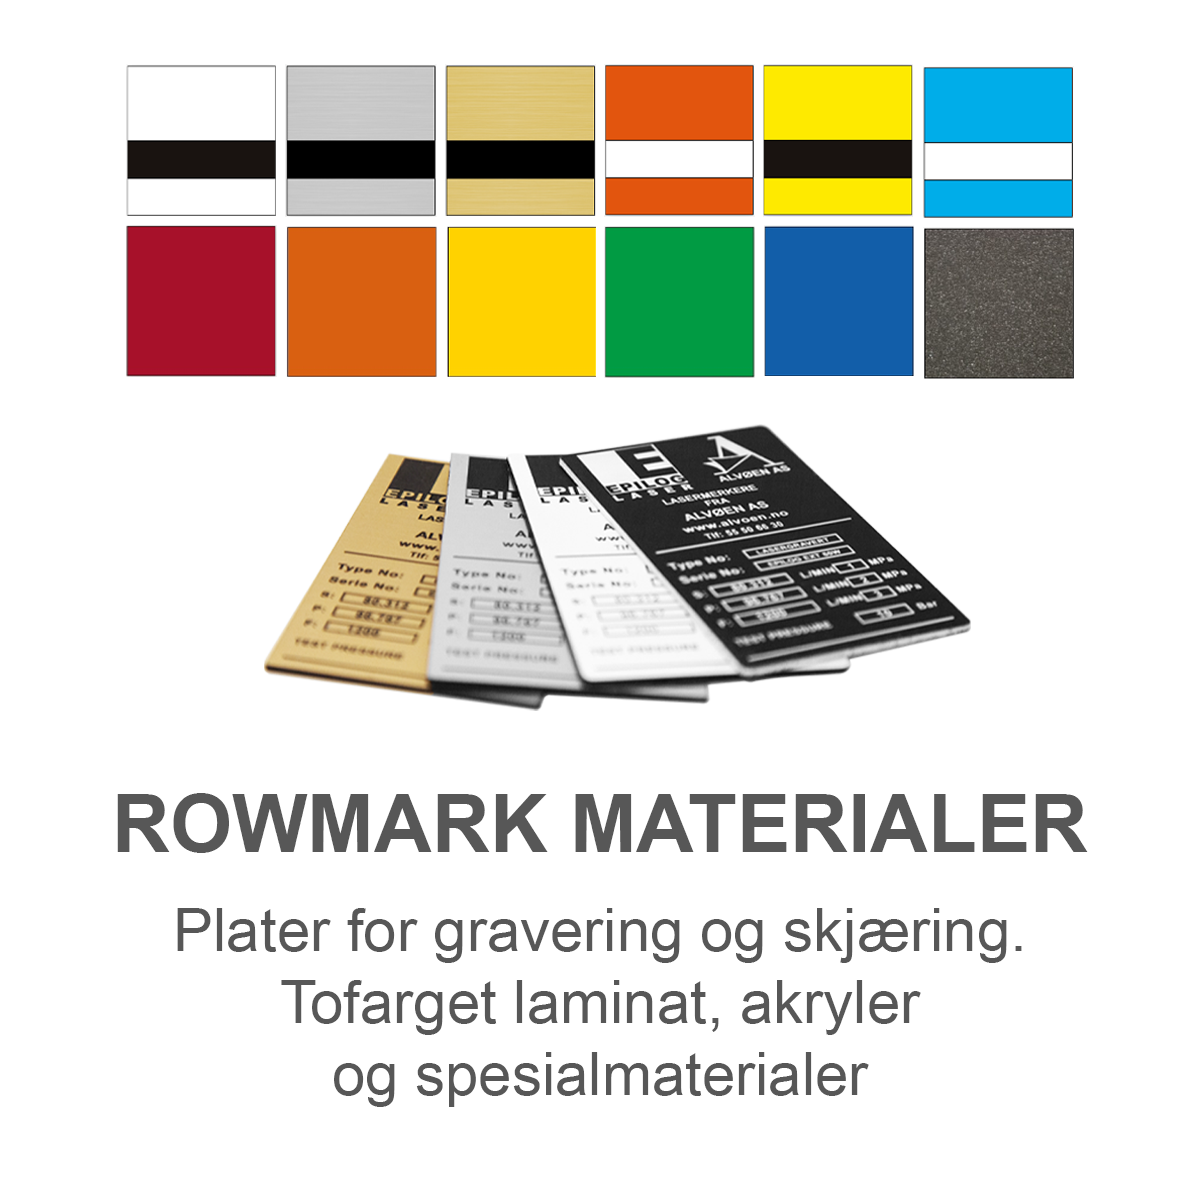 Rowmark Materialer - Plater for gravering og skjæring. Tofarget laminat, akryler og spesialmaterialer